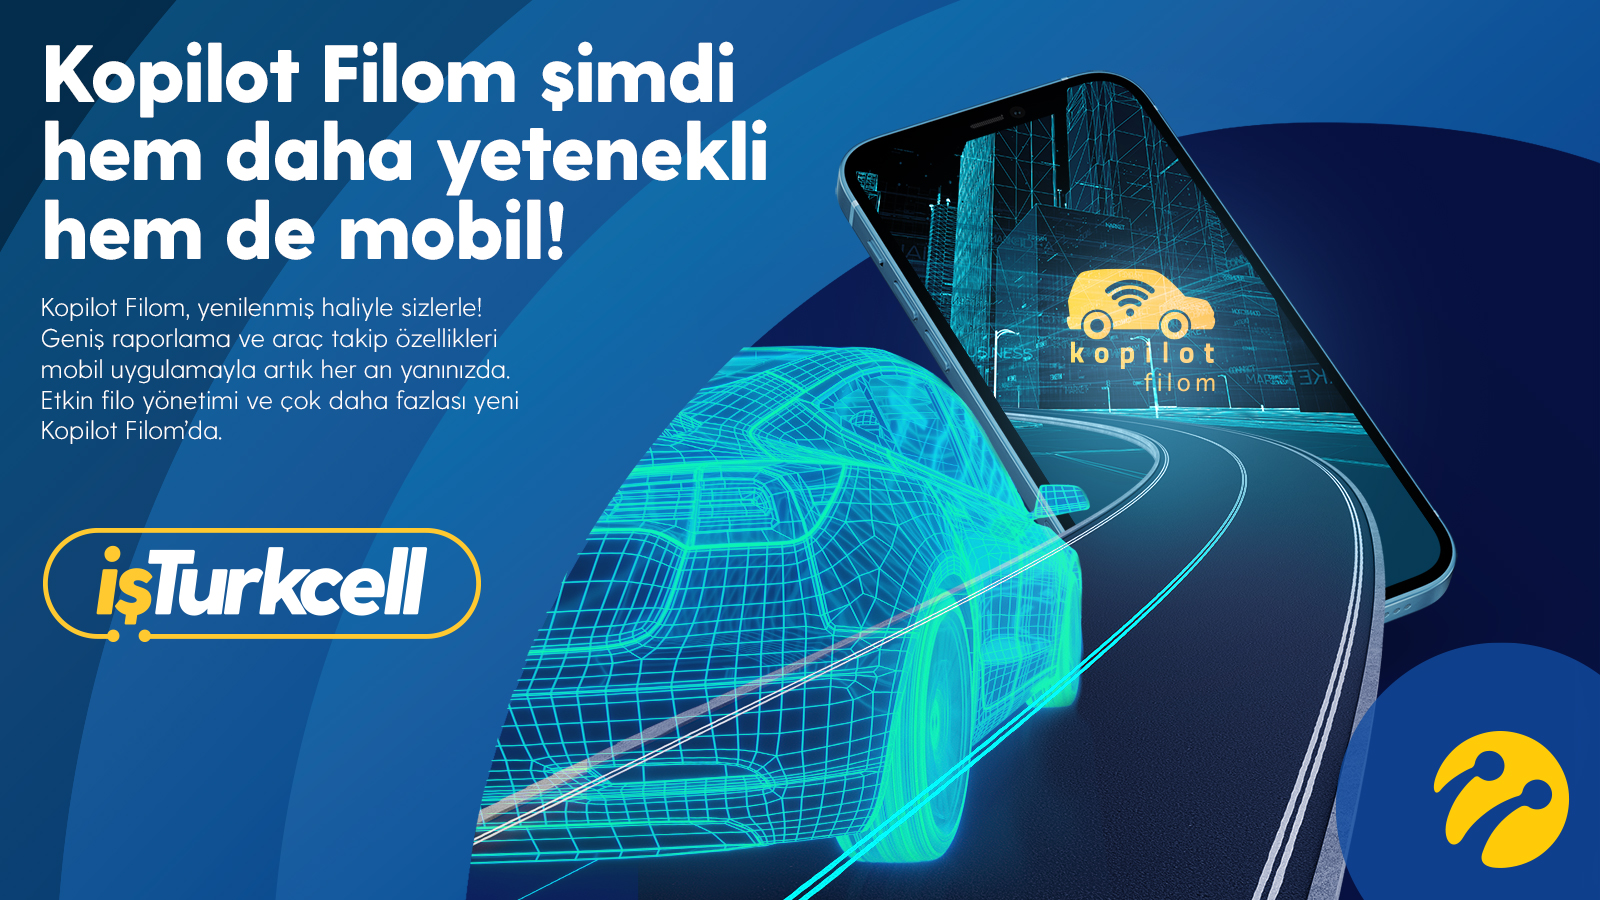 Turkcell Kopilot Filom (İşini Dijitalde Büyüt)